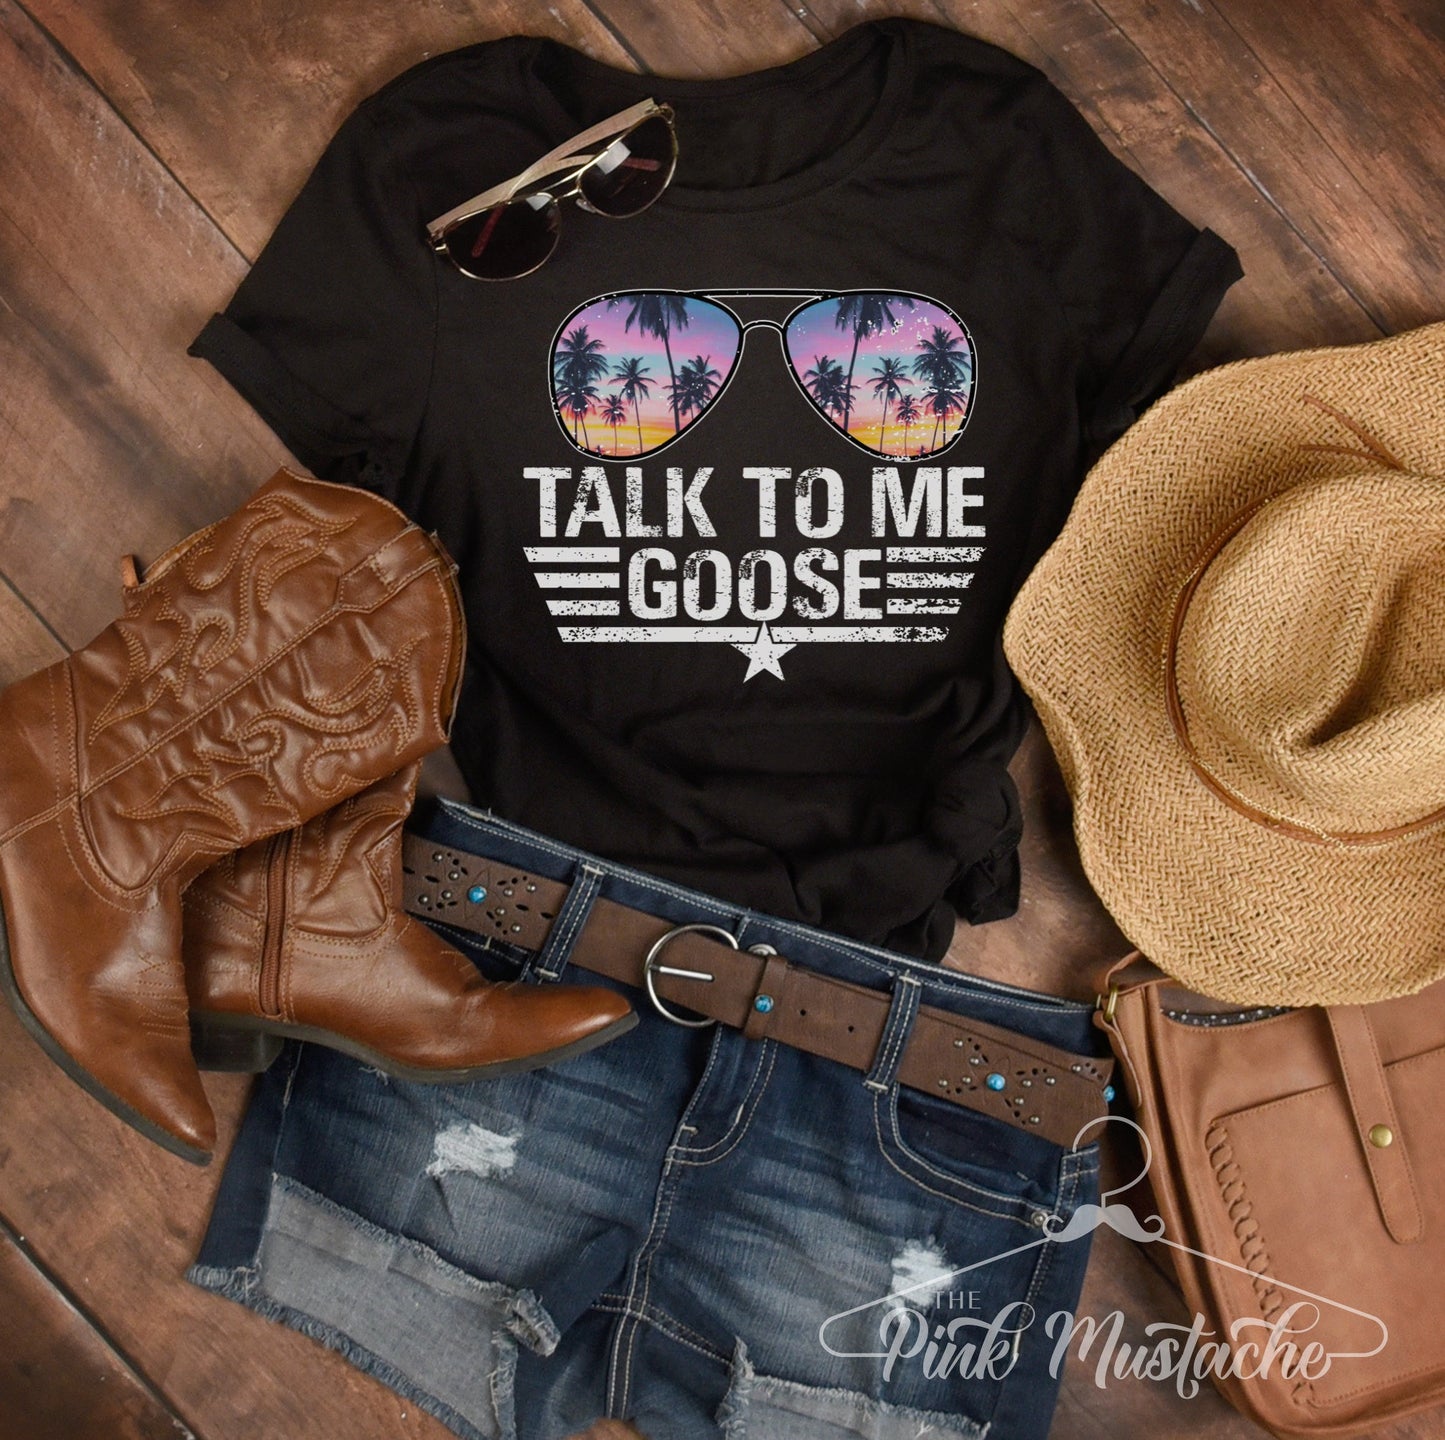 Talk To Me Goose T-Shirt Aviators - Bright Colors / Top Gun Inspired Tee / Maverick Goose / Aviators Tee - Top Gun 2 Inspired